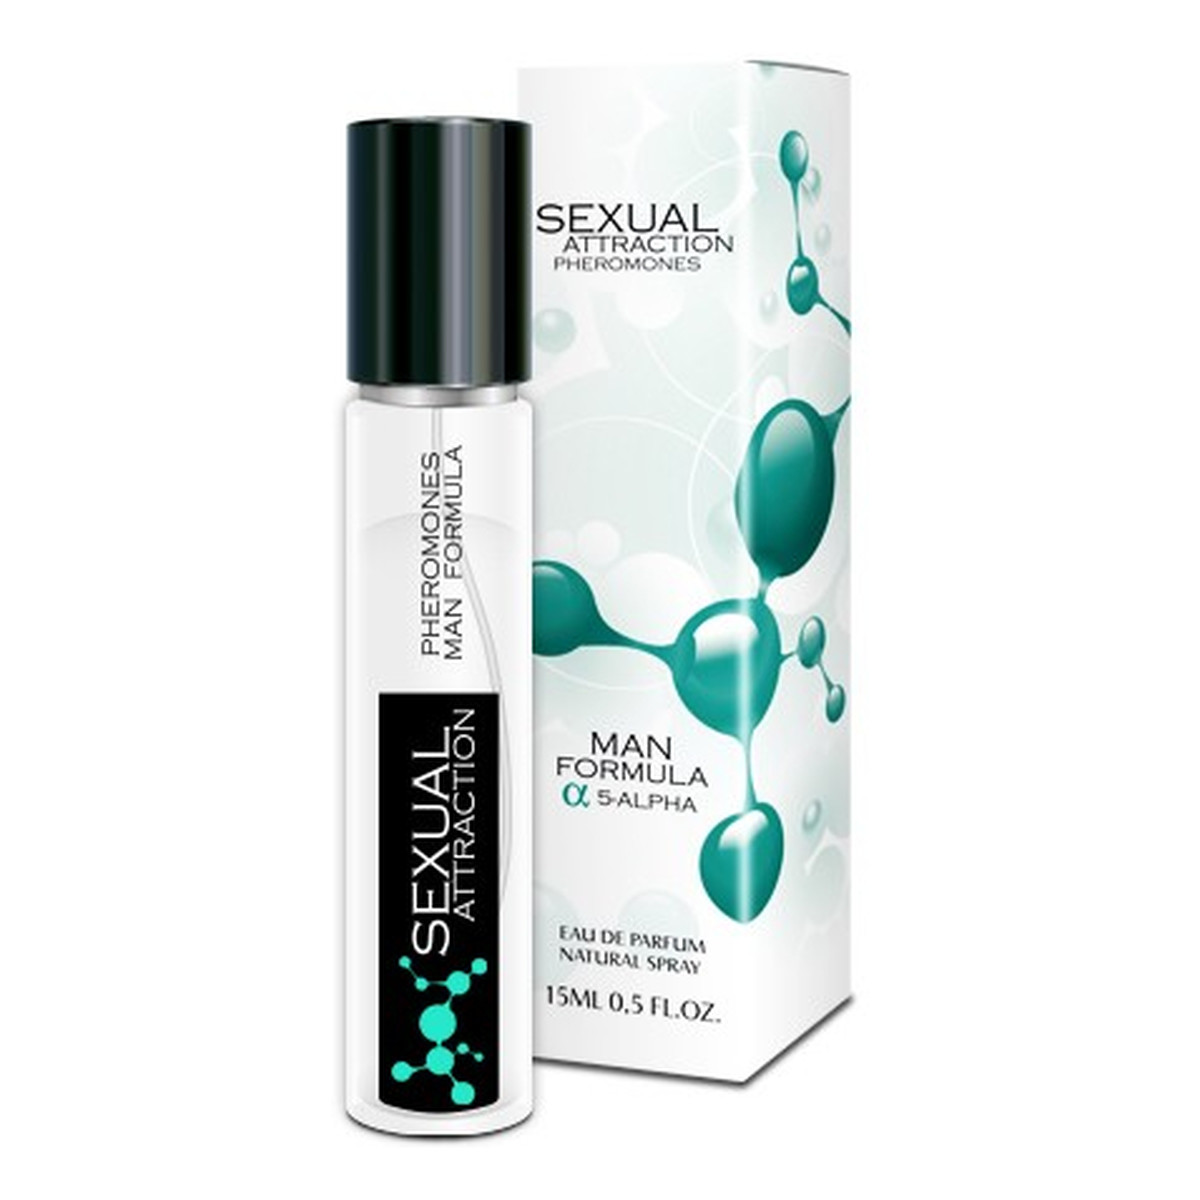 Sexual Attraction Pheromones Man Formula 5-Alpha feromony dla mężczyzn Woda perfumowana spray 15ml